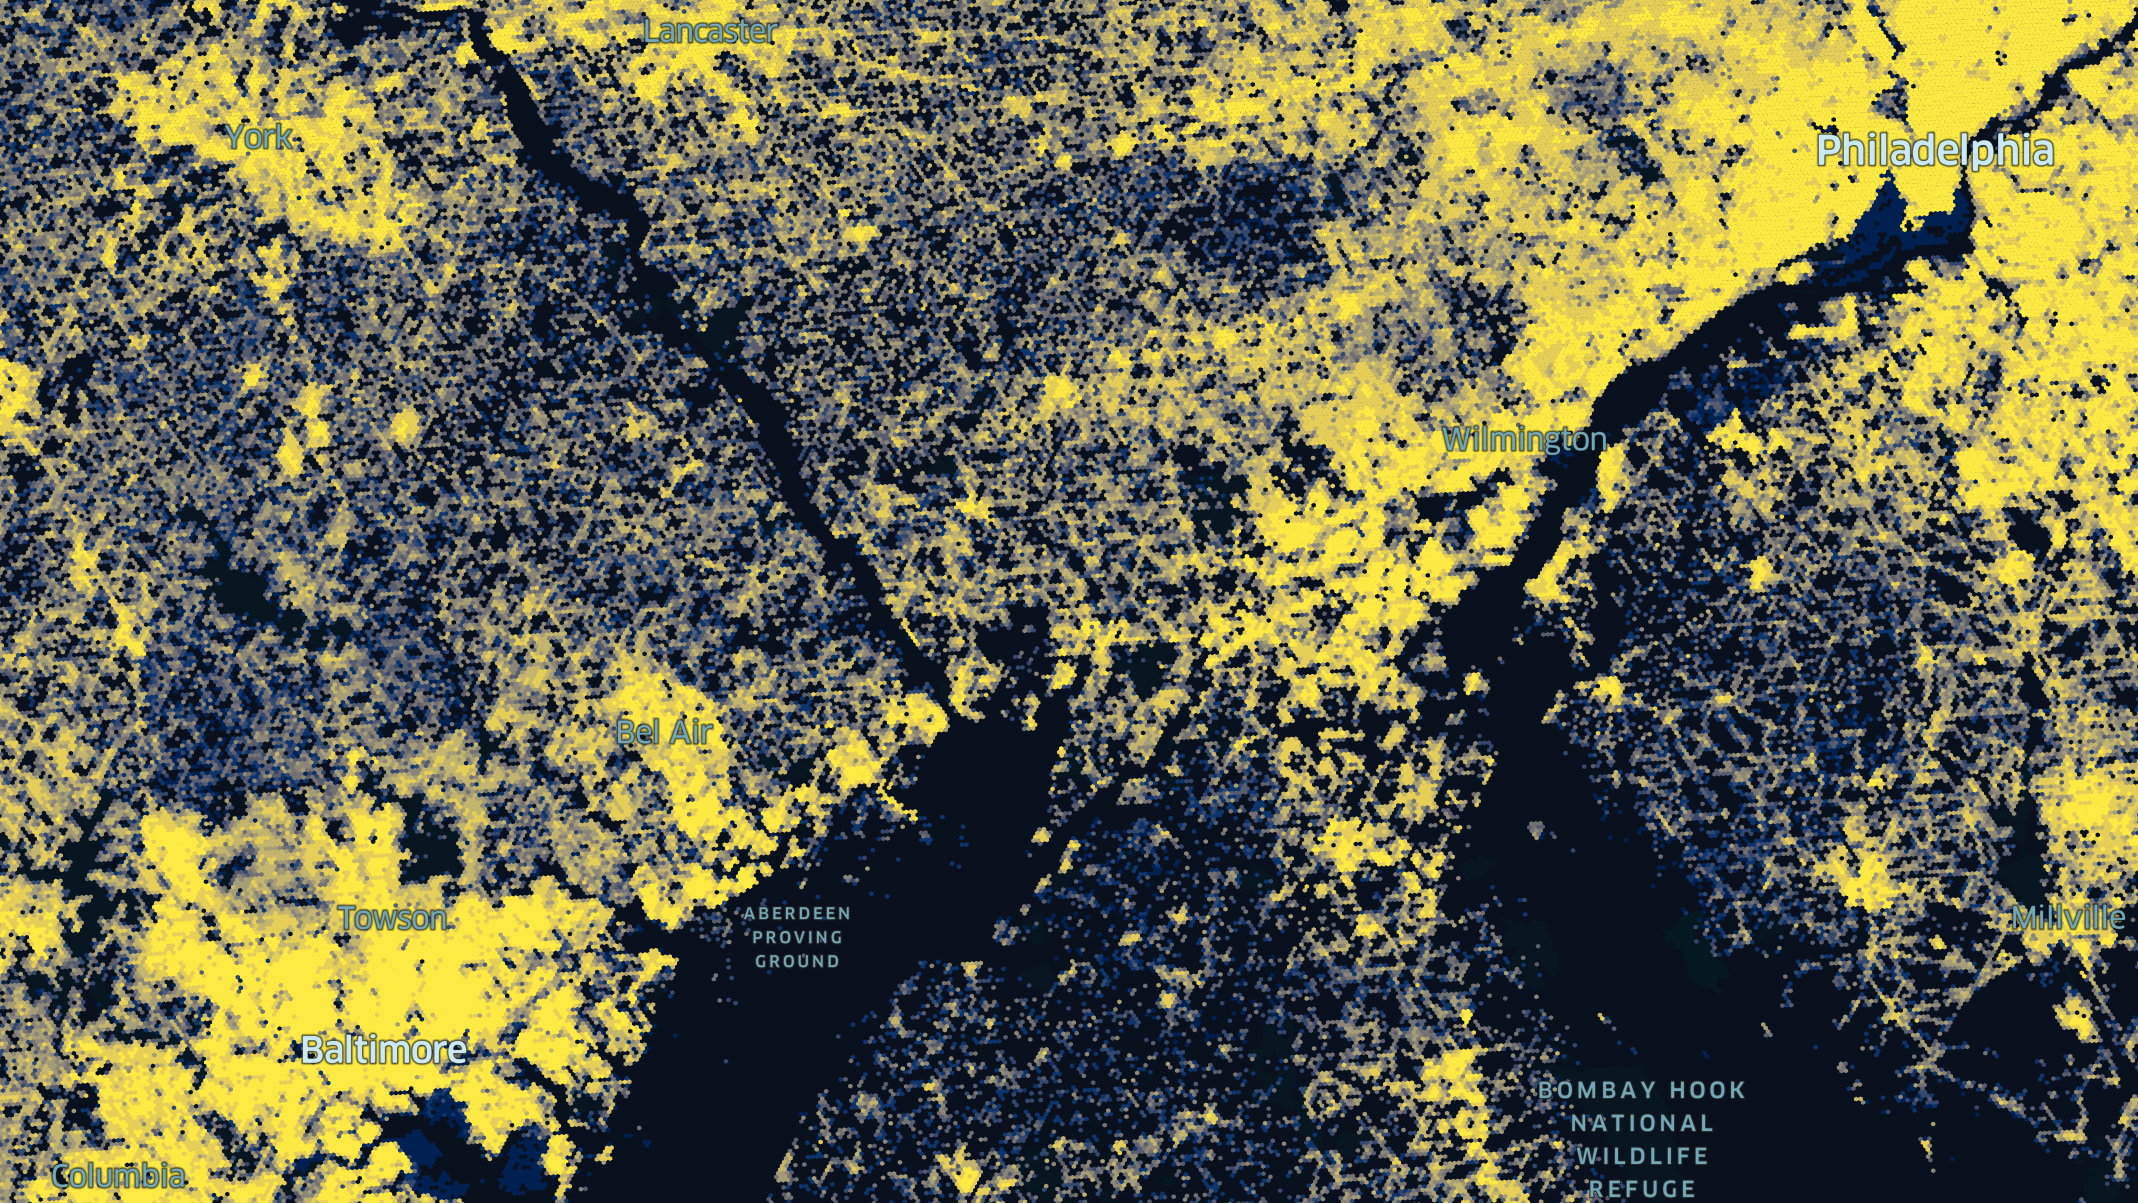 Hex Tiles visualizing US Census Data.